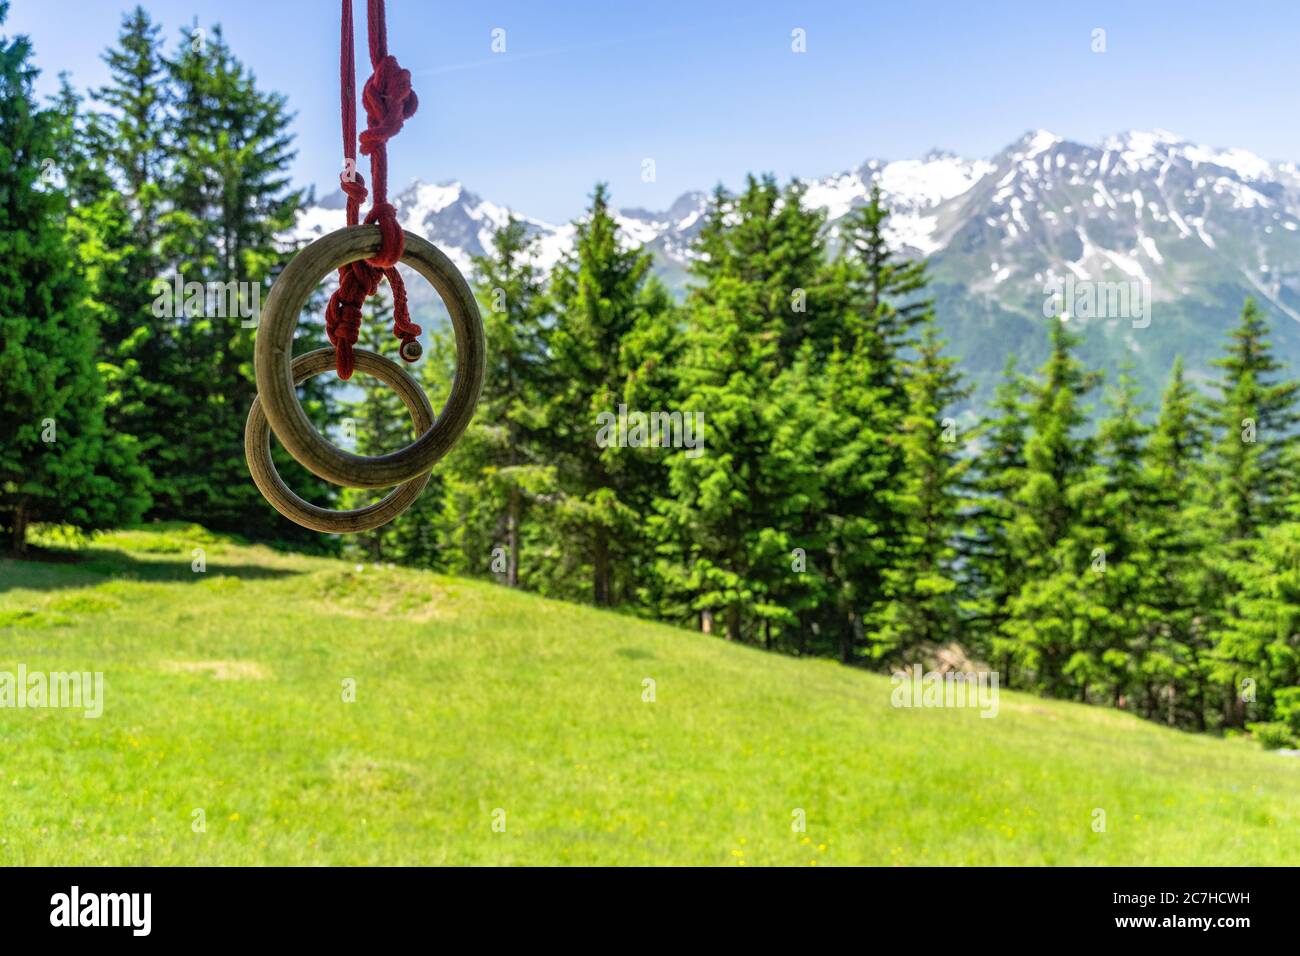 Europa, Österreich, Tirol, Ötztal Alpen, Ötztal, Gymnastikringe hängen vor einer Bergkulisse Stockfoto